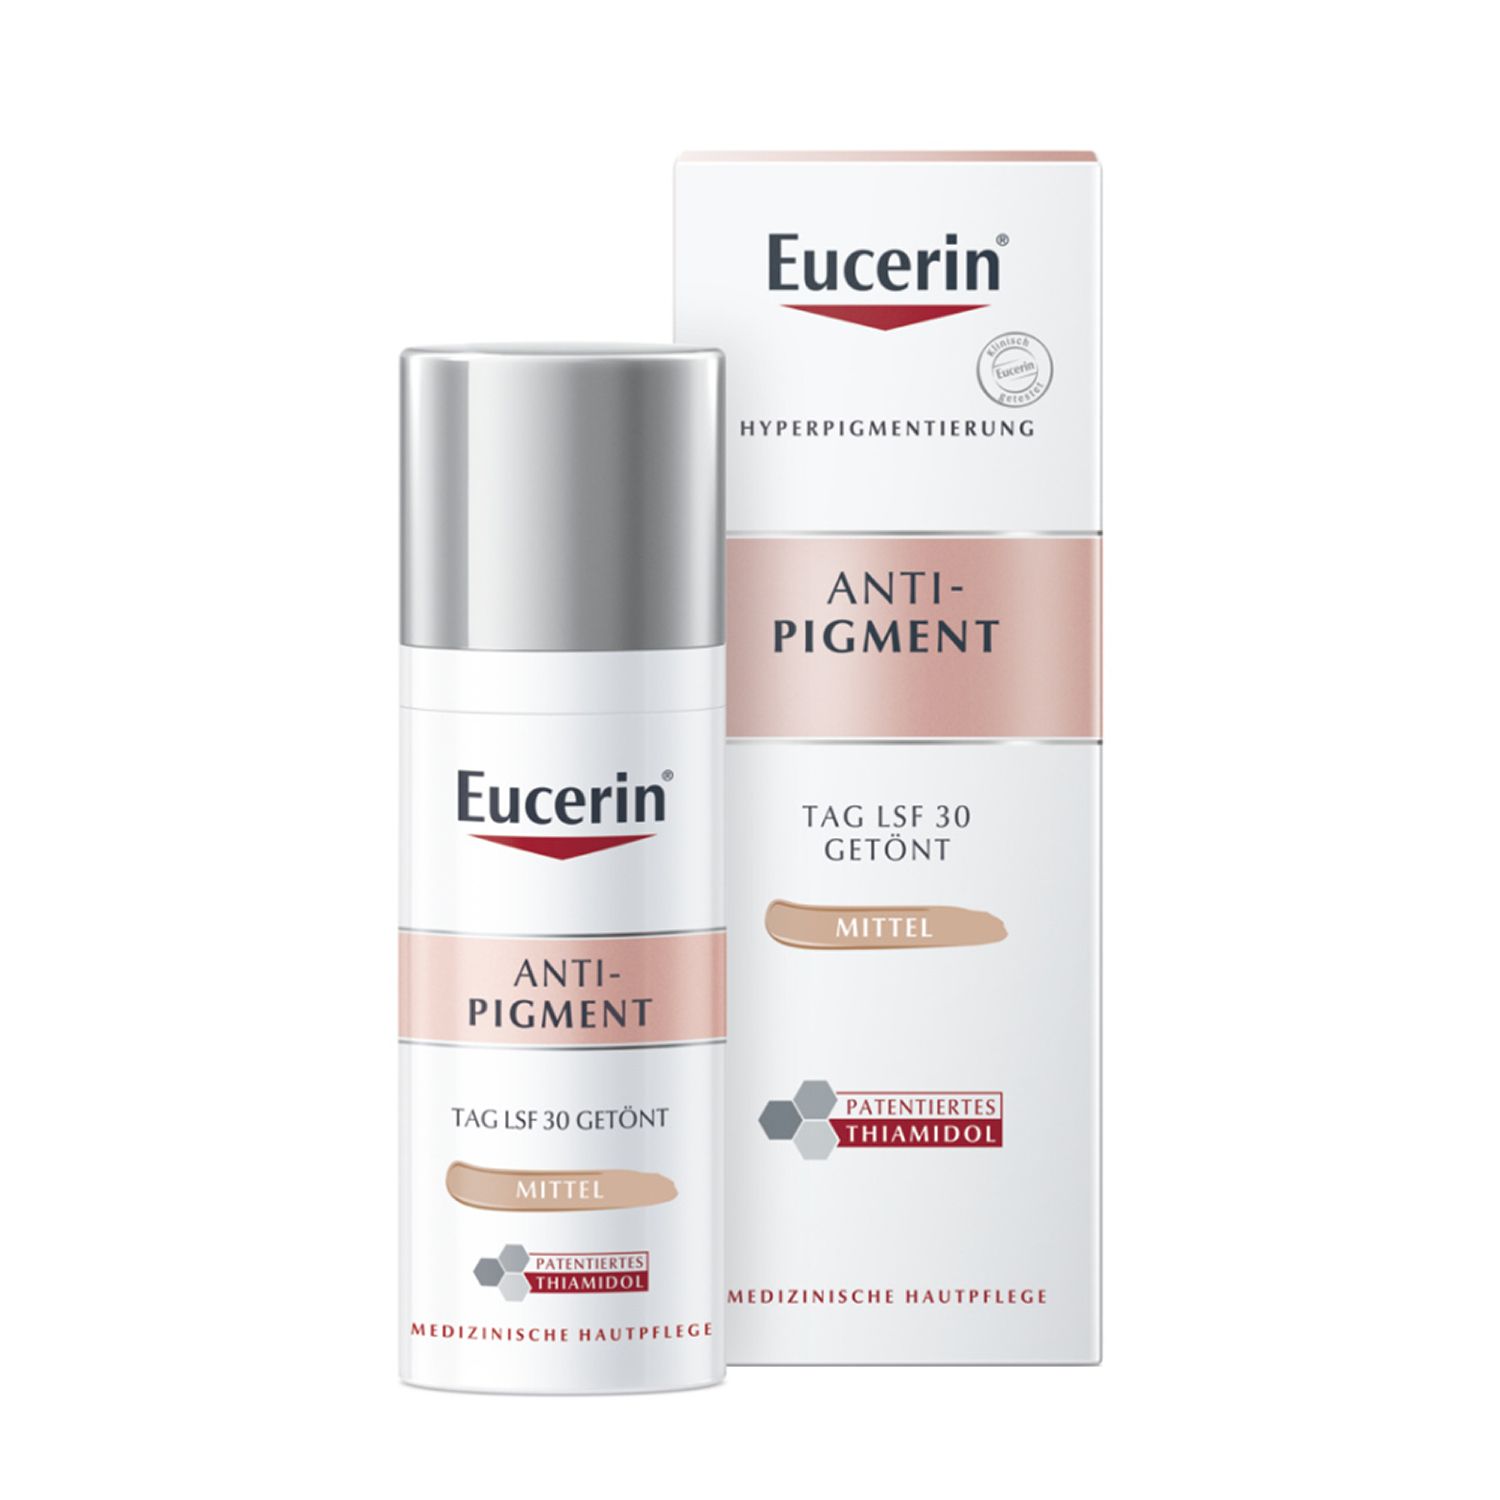 Eucerin® Anti-Pigment Tag LSF 30 Getönt Mittel + Dermatoclean Mizellen-Reinigungsfluid 100ml GRATIS